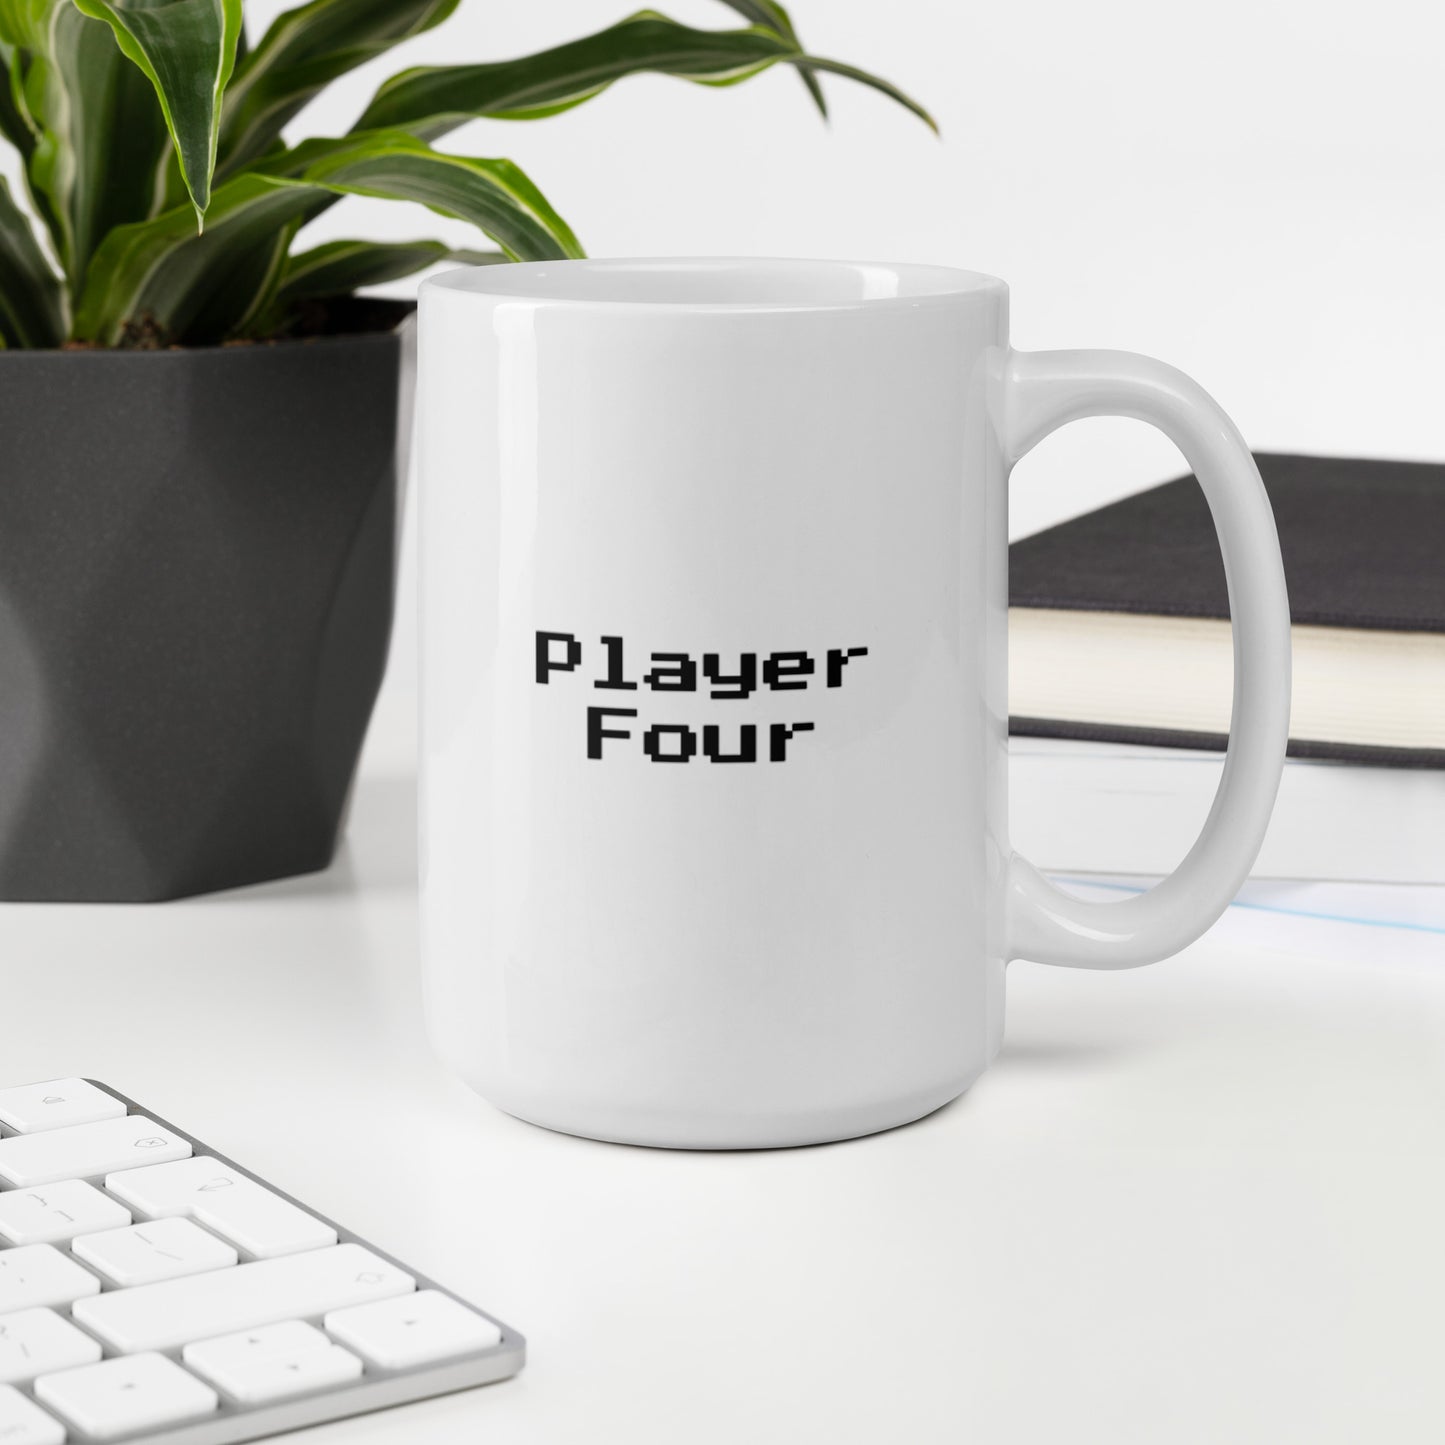 Player four - Mug